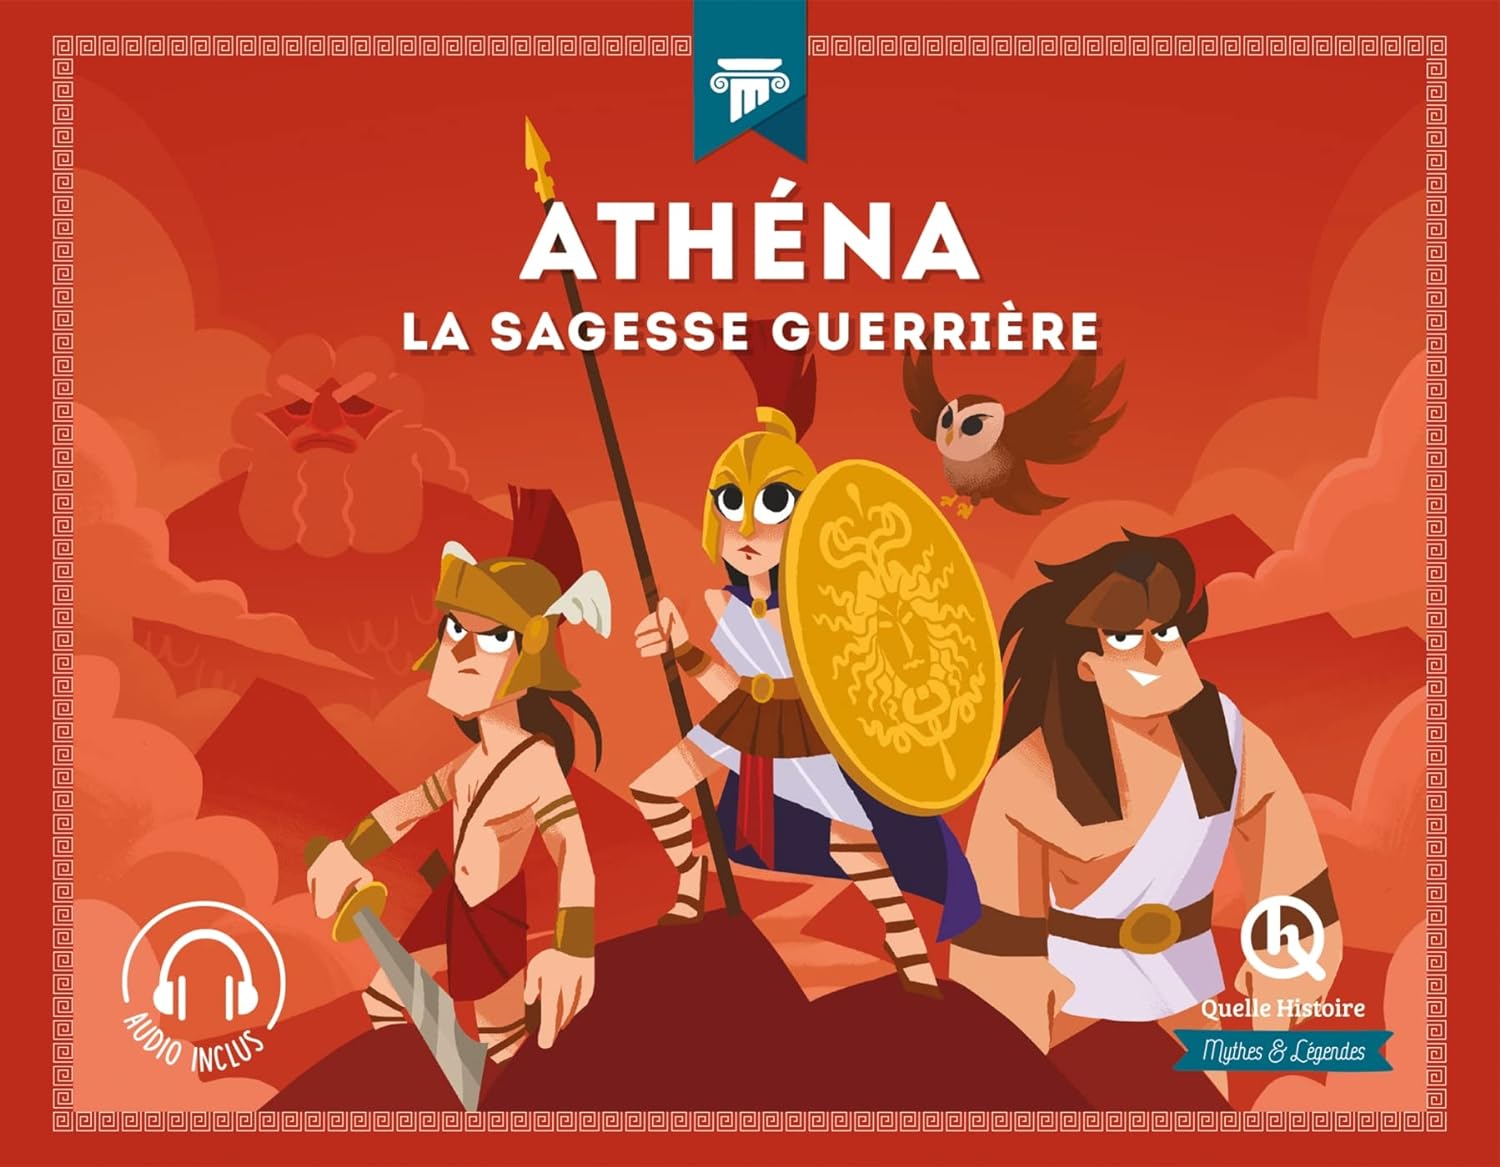 ATHENA - LA SAGESSE GUERRIERE